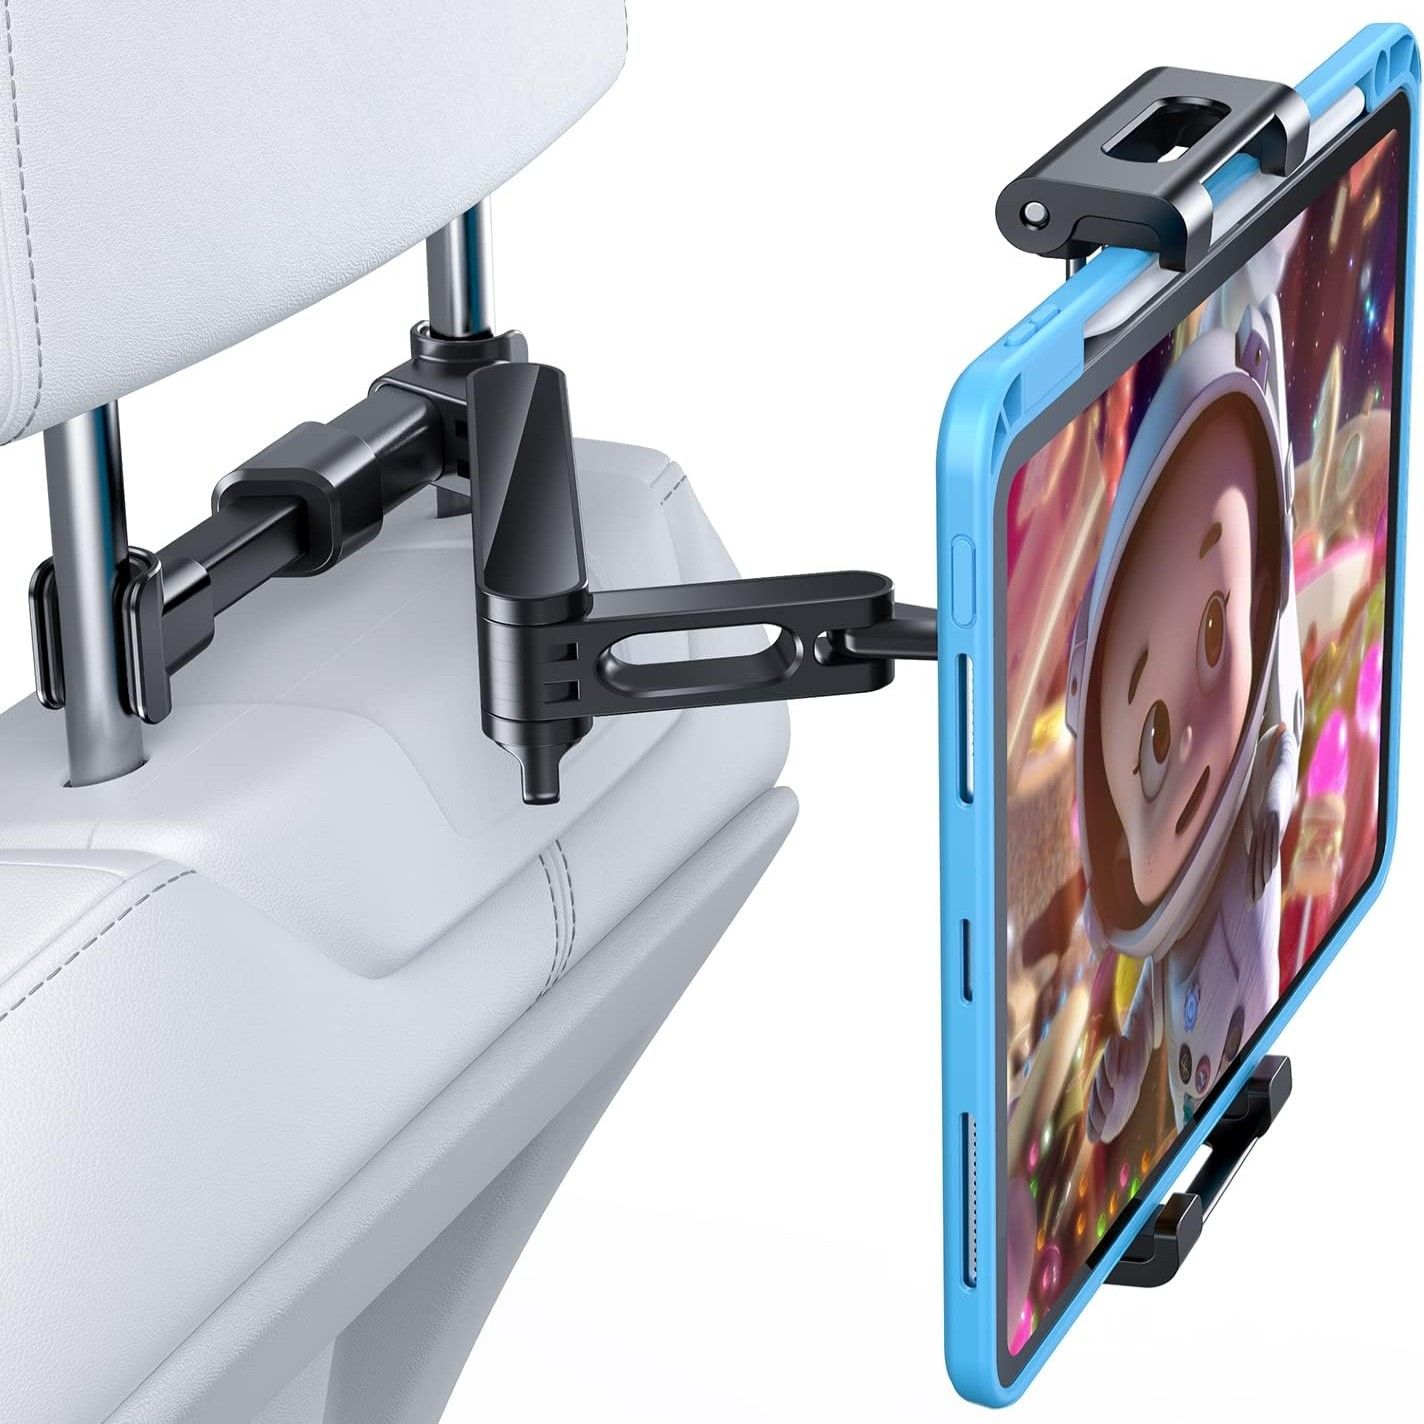 APPS2Car Car Backseat Tablet Holder Gooseneck Headrest iPad Mount –  APPS2Car Mount